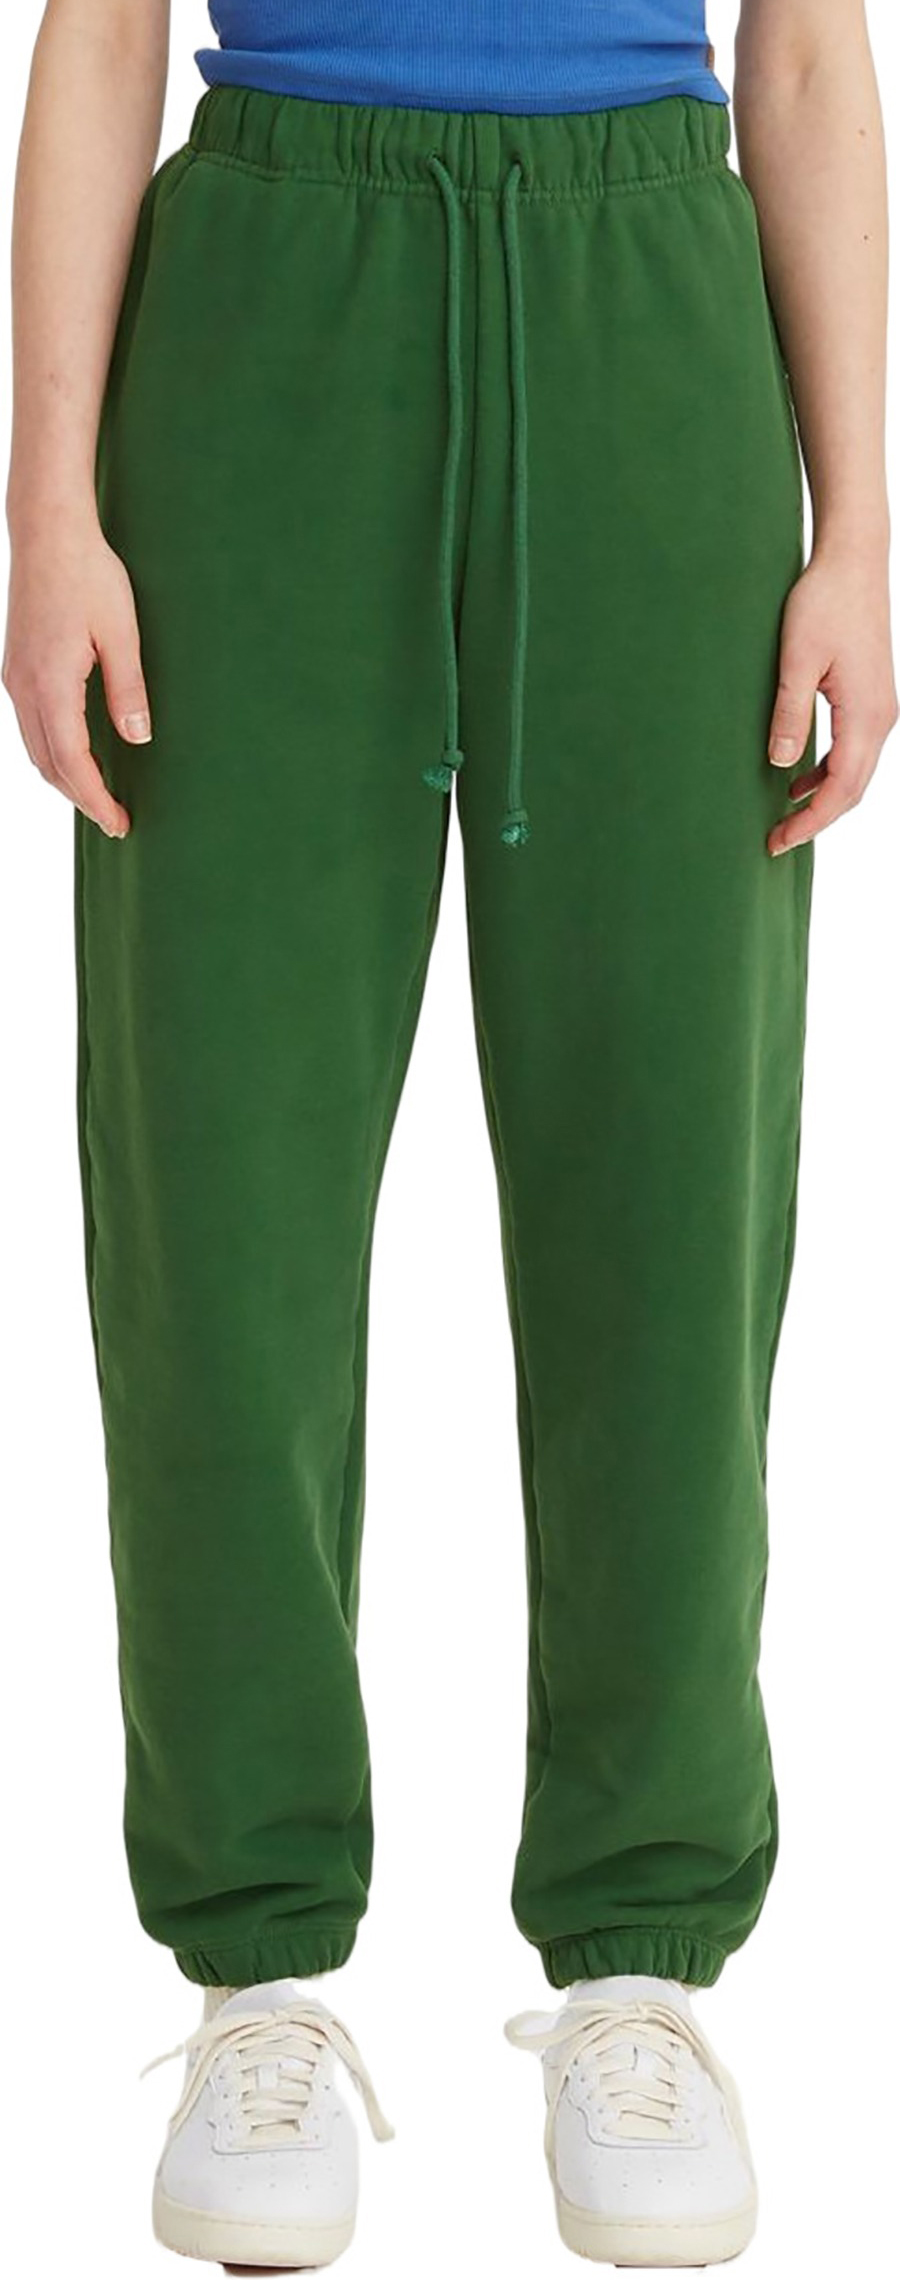 Спортивные брюки женские Levi's A3743-0010 зеленые M